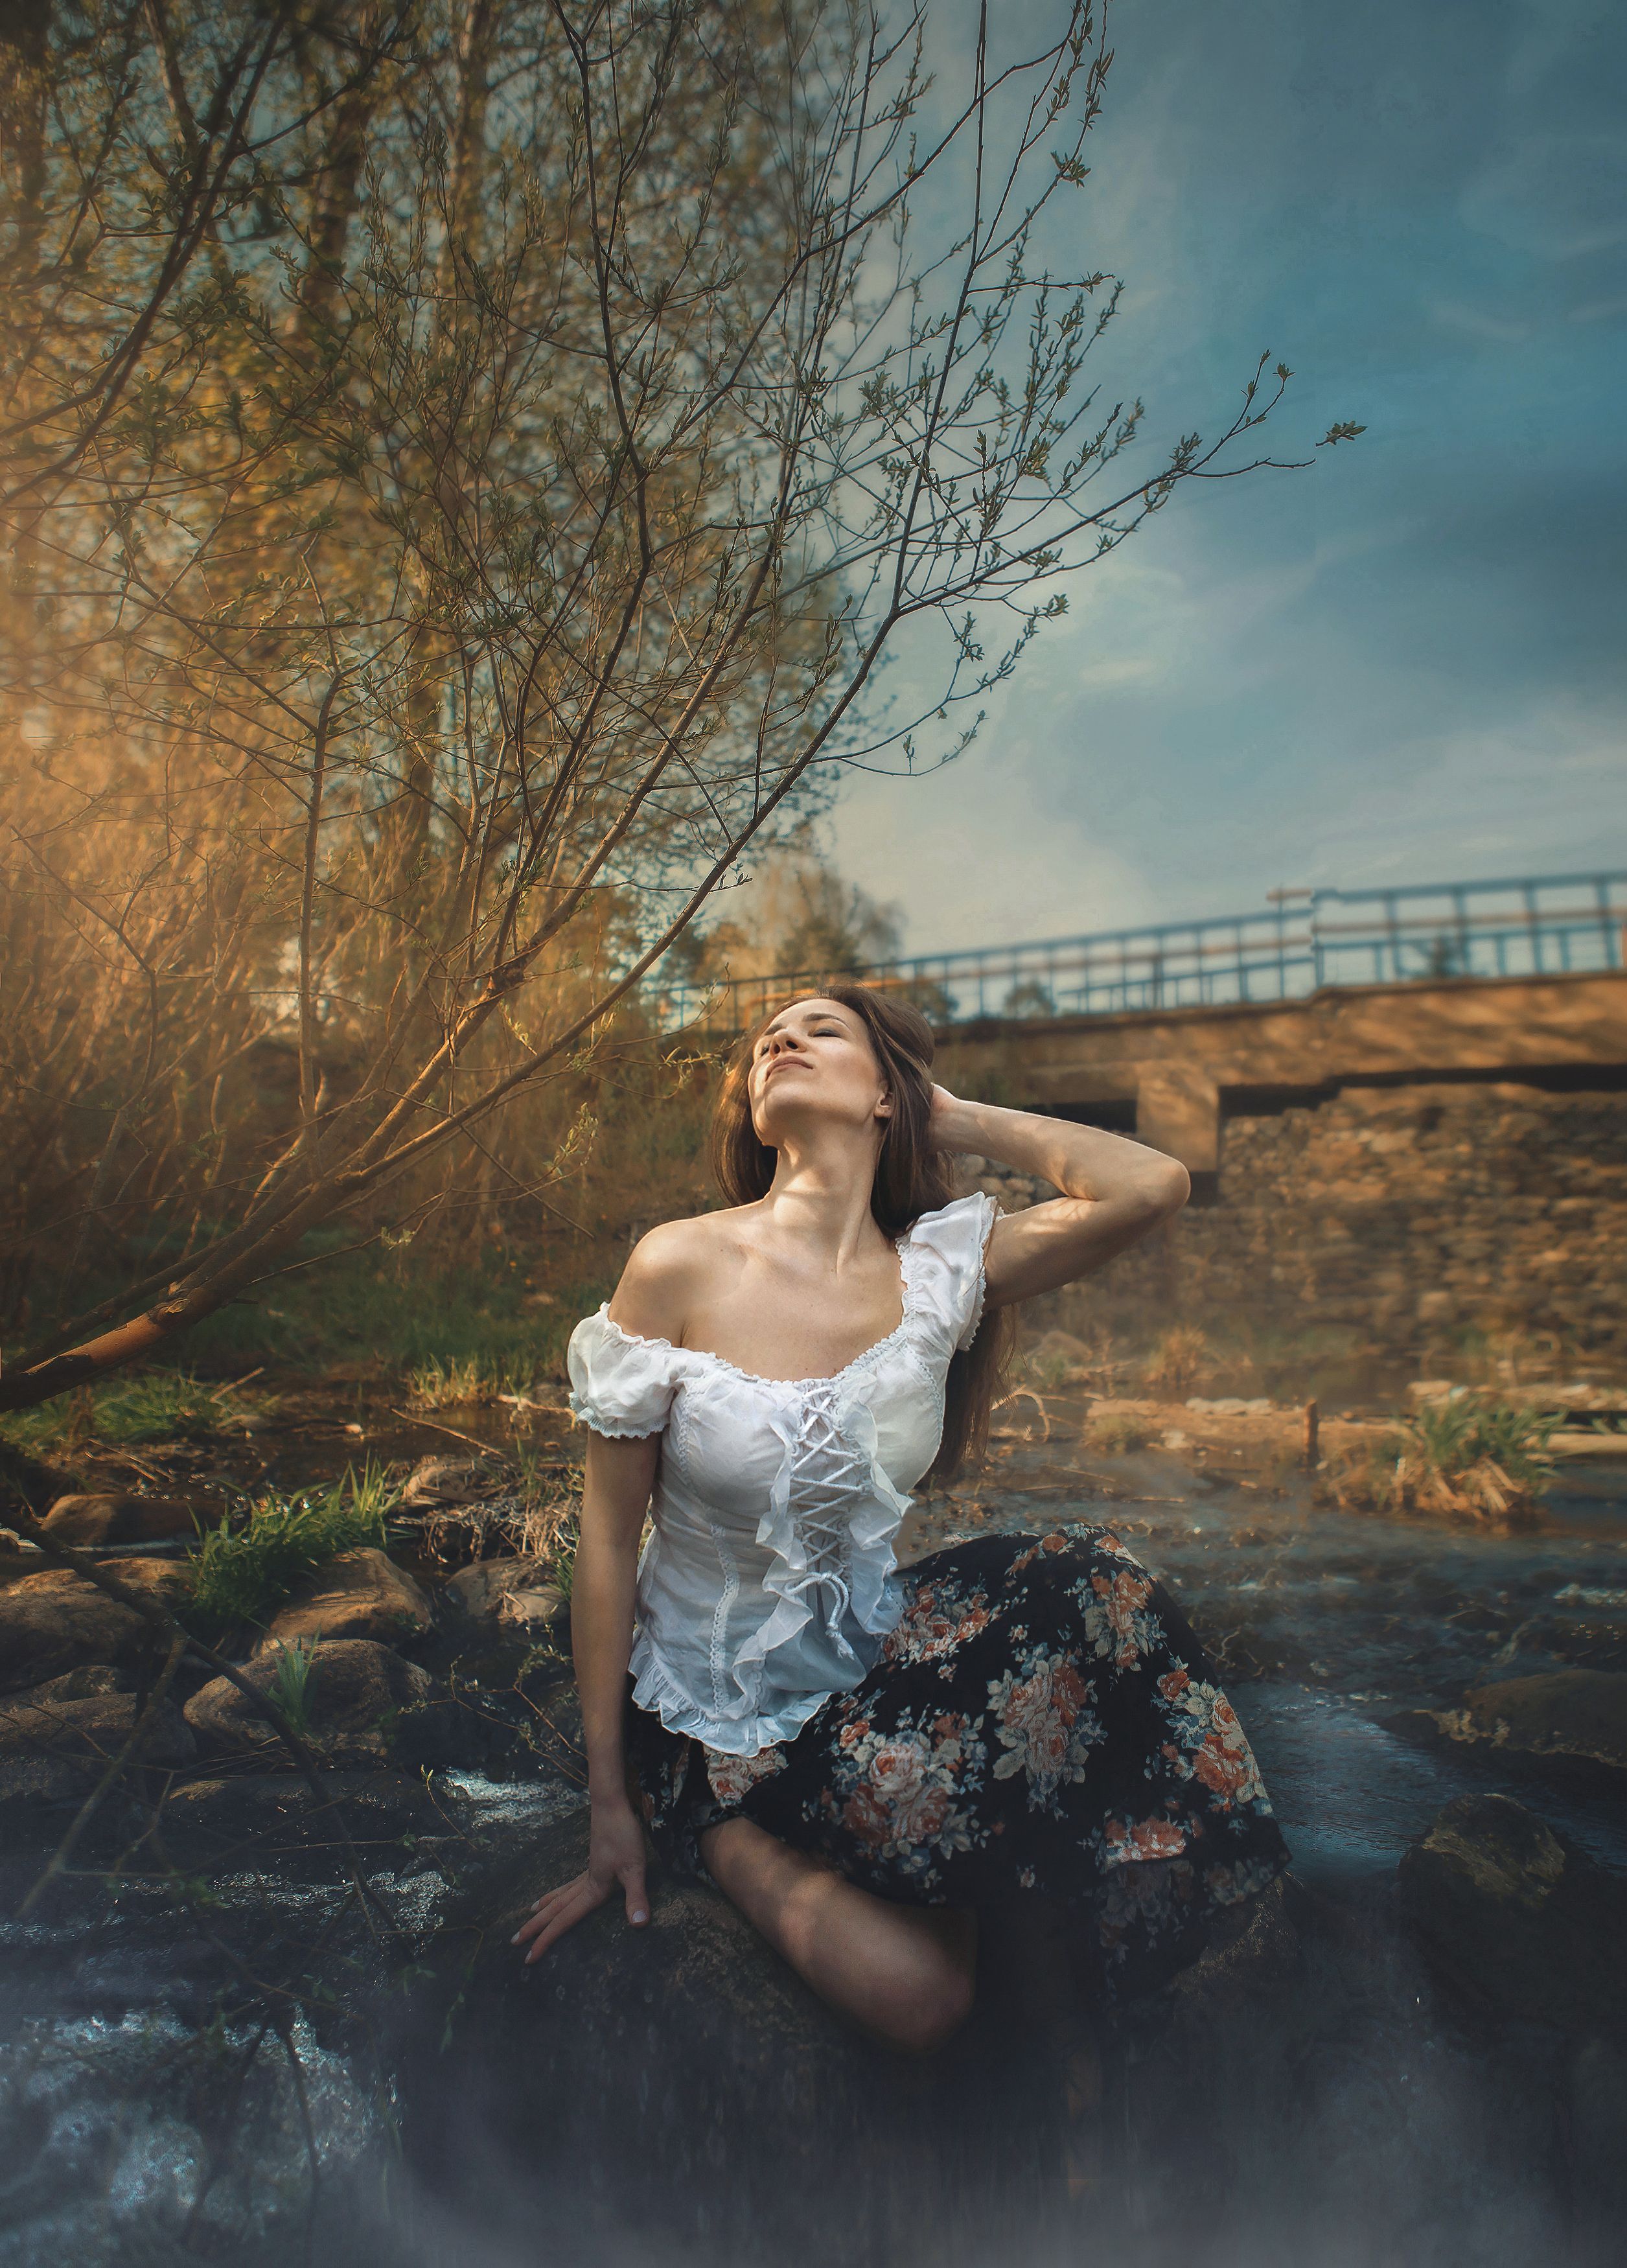 река девушка красота любовь природа искусство фотография покой радость  облака вода небо, Шепелева Татьяна